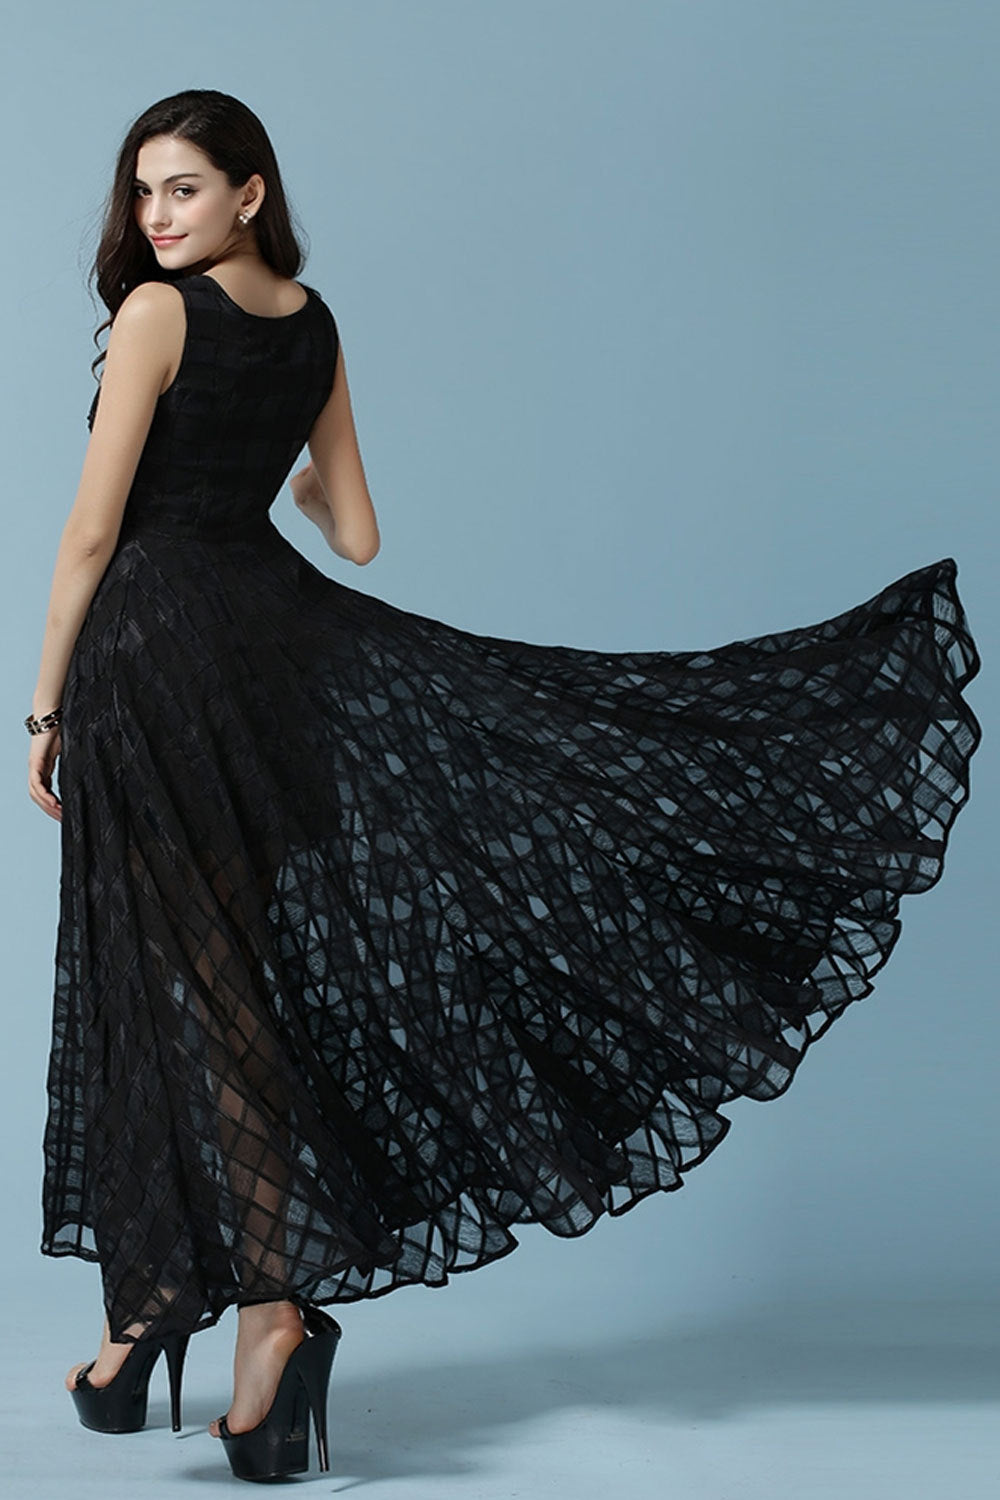 Ketty More Women's Sleeves New Fashion Jacquard Dress-KMWD213